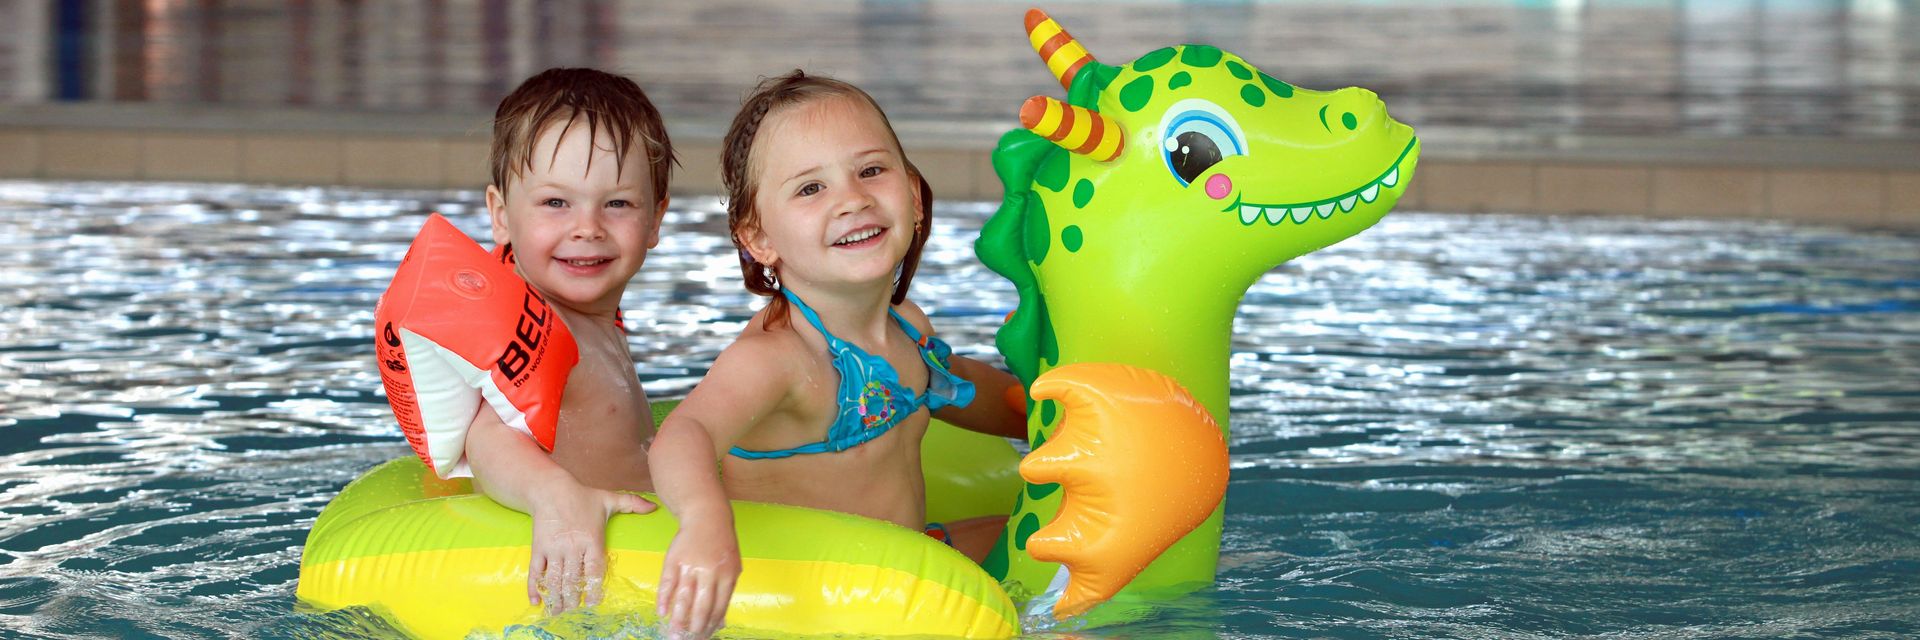 ein kleiner Junge mit Schwimmflügeln und ein kleines Mädchem in türkisenen Bikini sitzen auf einem grünen Luftballontier im Kleinkinderbecken